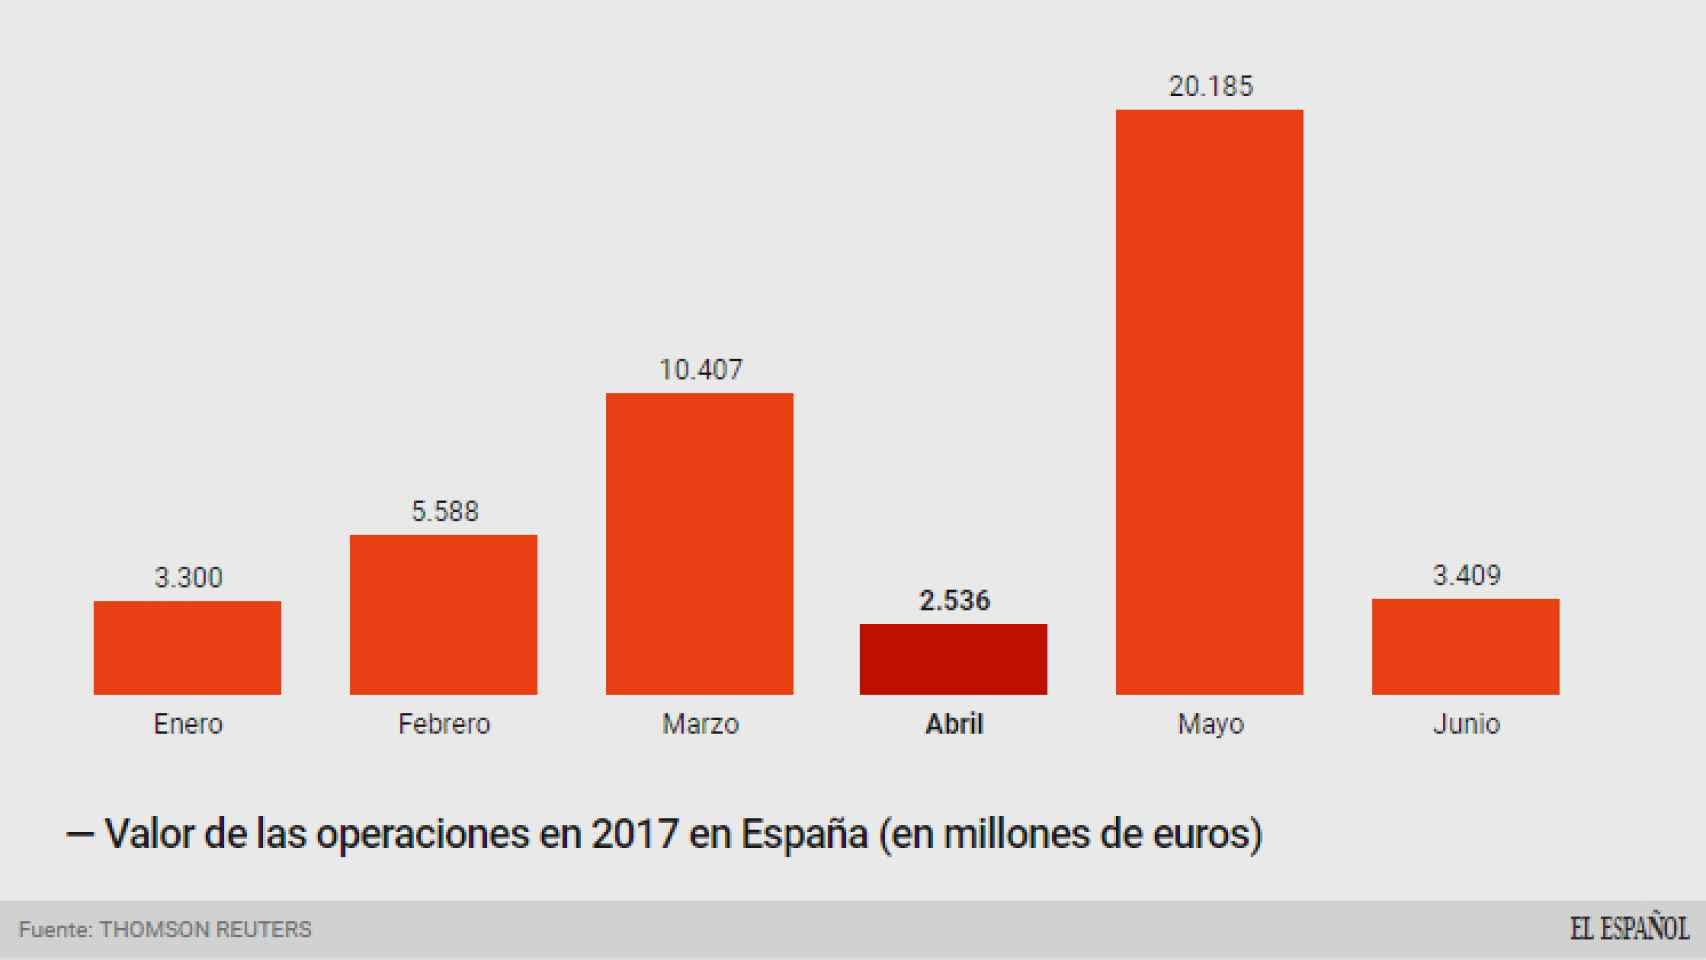 Valor de las operaciones en España en 2017